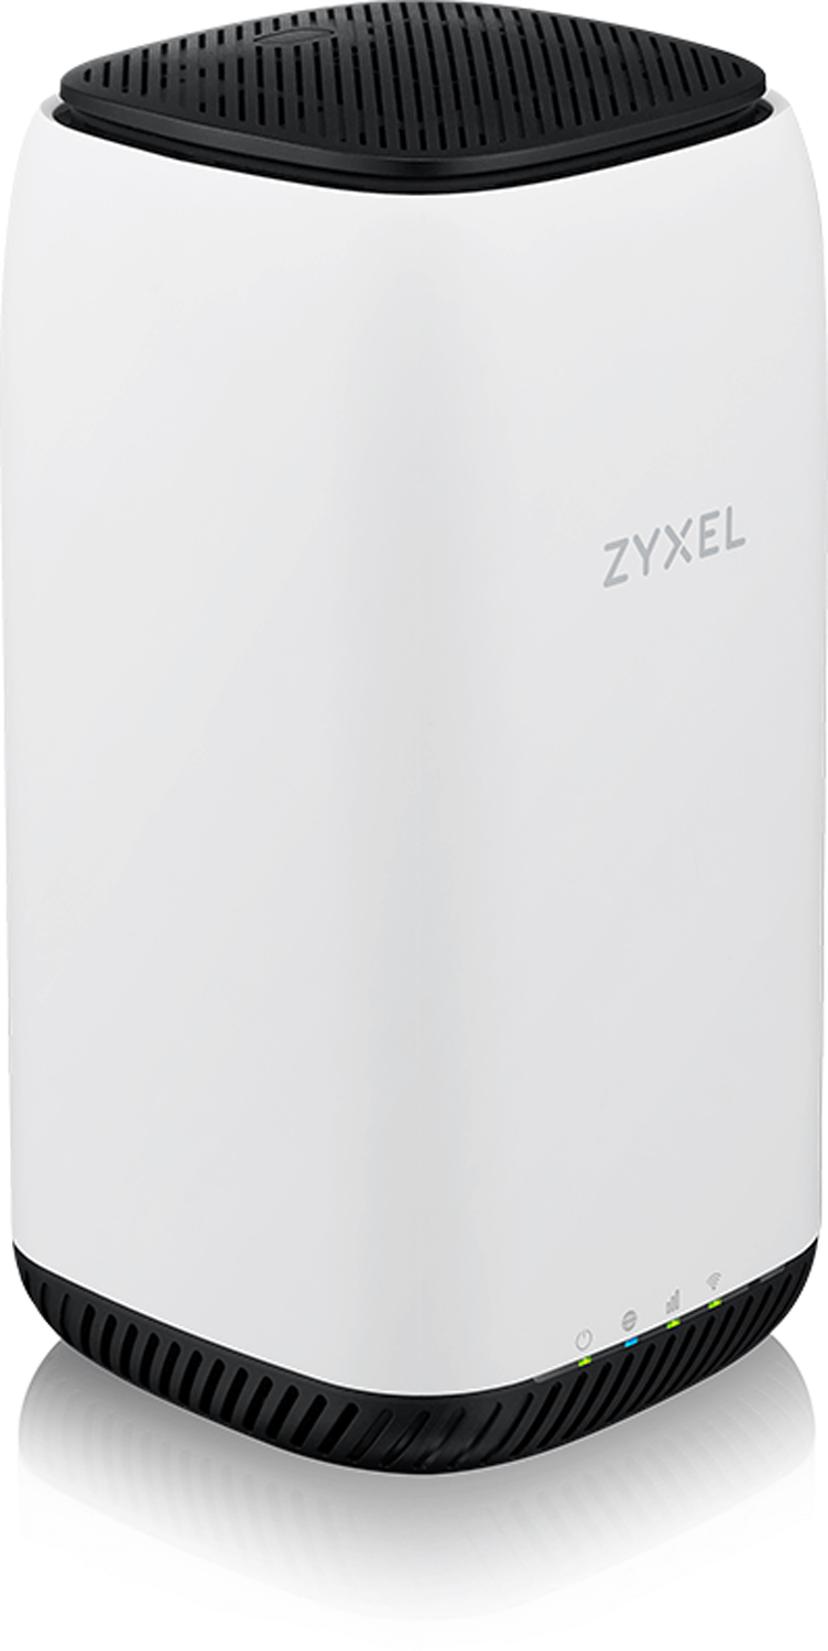 Zyxel Paketti, joka sisältää Zyxel Nebula NR5101 -reitittimen ja Poynting XPOL-2-5G -antennin